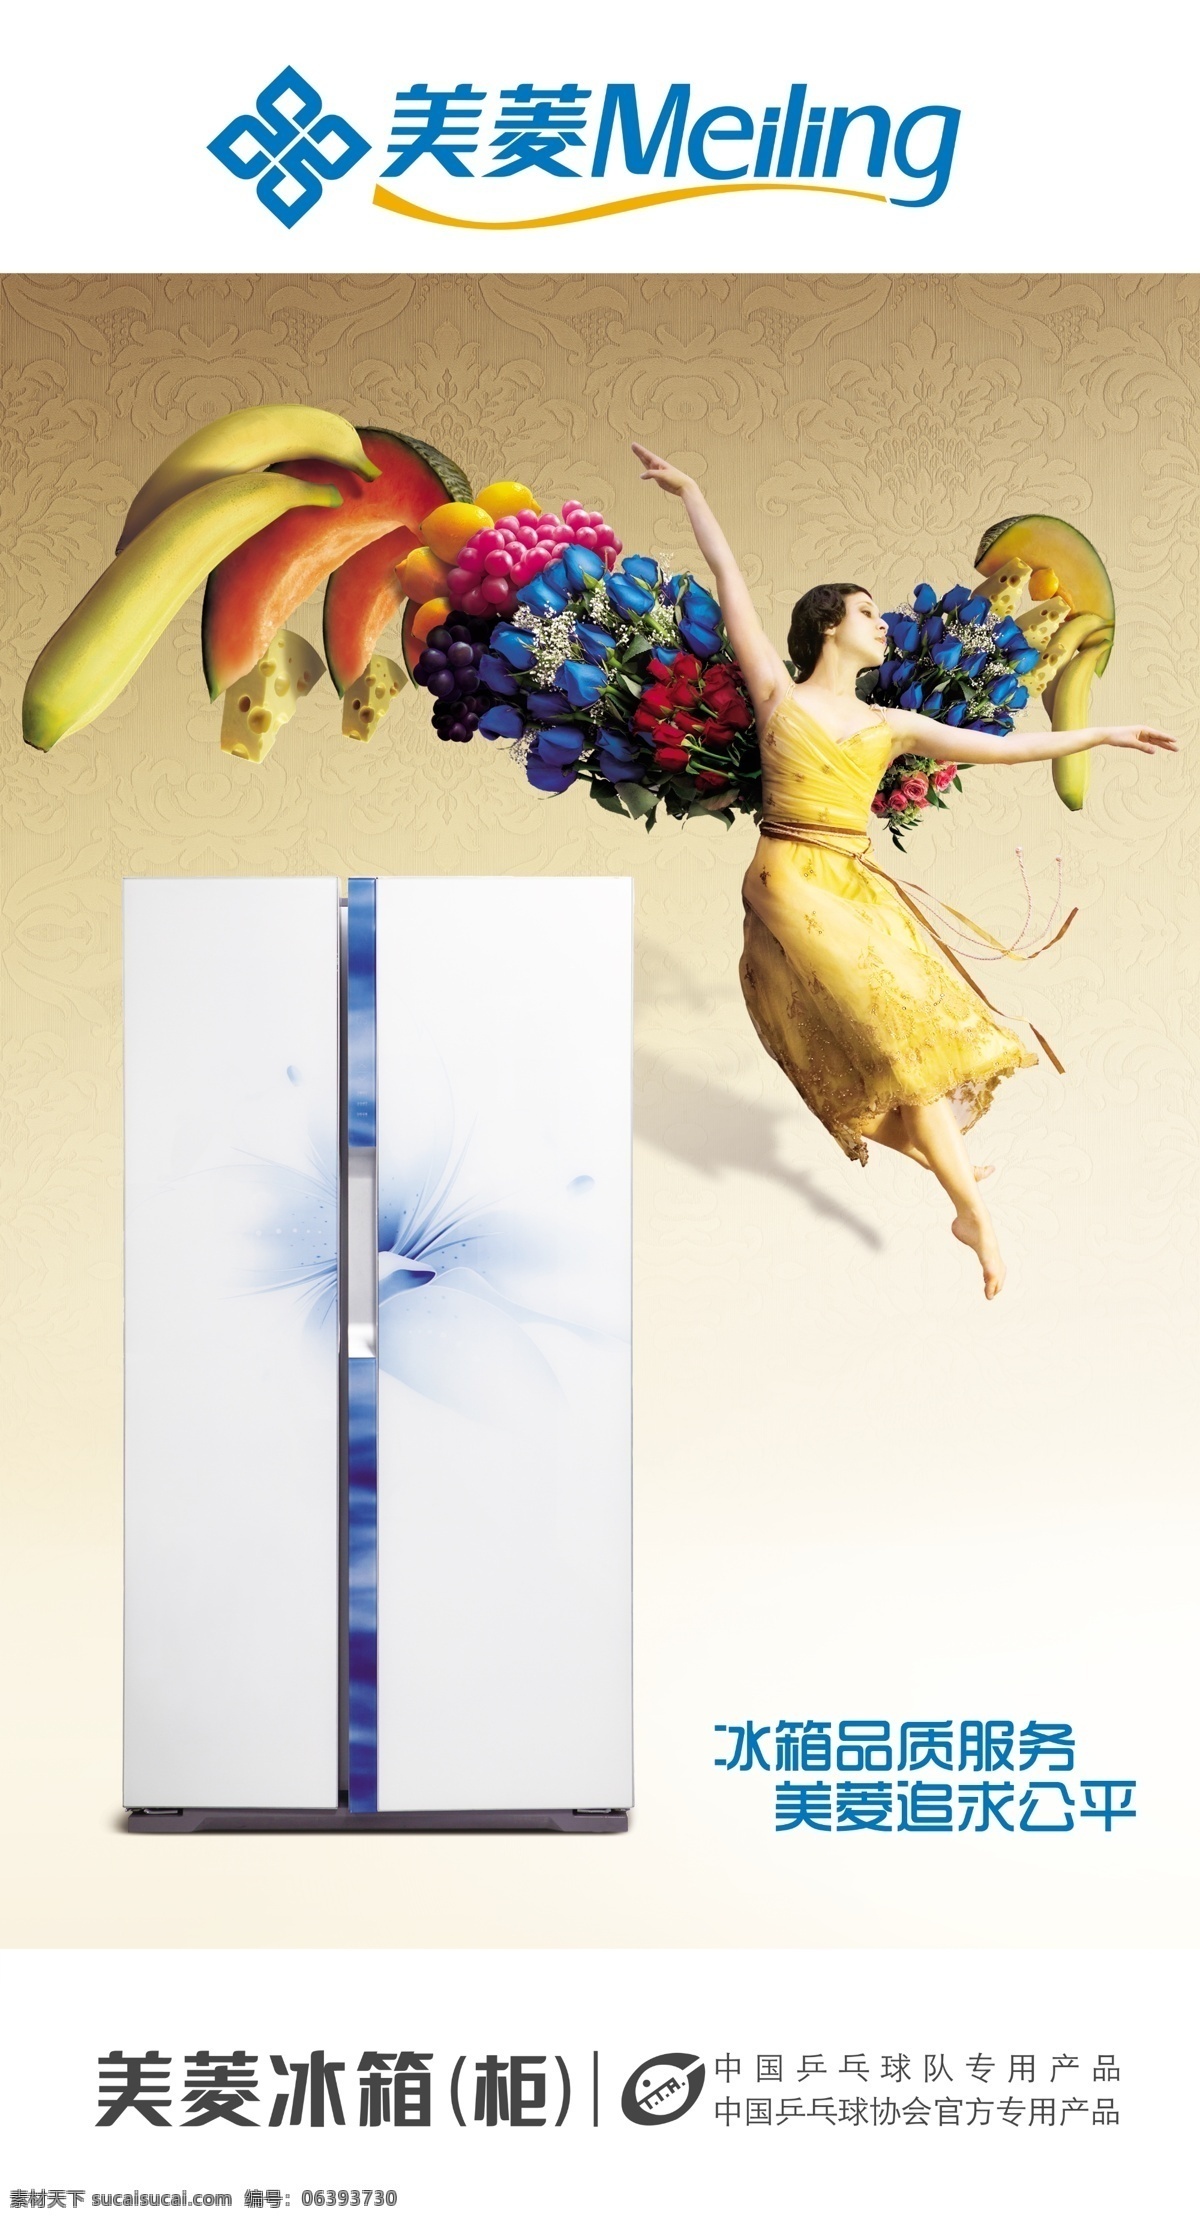 美菱冰箱 冰箱品质服务 美菱追求公平 美菱logo 冰箱 水果 人物 广告设计模板 源文件 白色